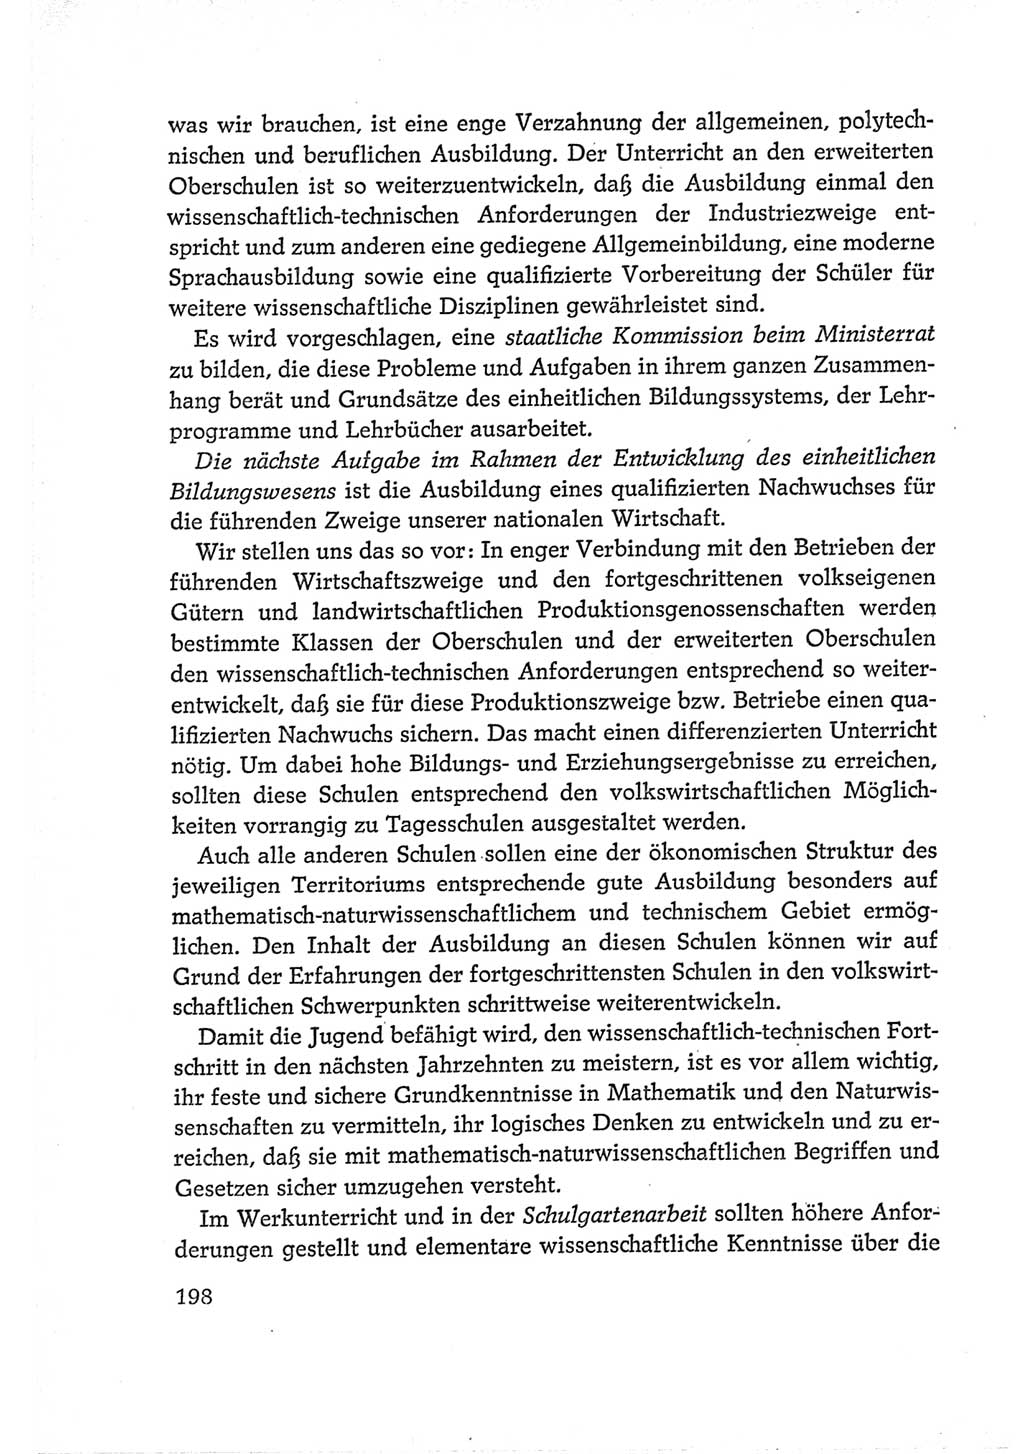 Protokoll der Verhandlungen des Ⅵ. Parteitages der Sozialistischen Einheitspartei Deutschlands (SED) [Deutsche Demokratische Republik (DDR)] 1963, Band Ⅰ, Seite 198 (Prot. Verh. Ⅵ. PT SED DDR 1963, Bd. Ⅰ, S. 198)